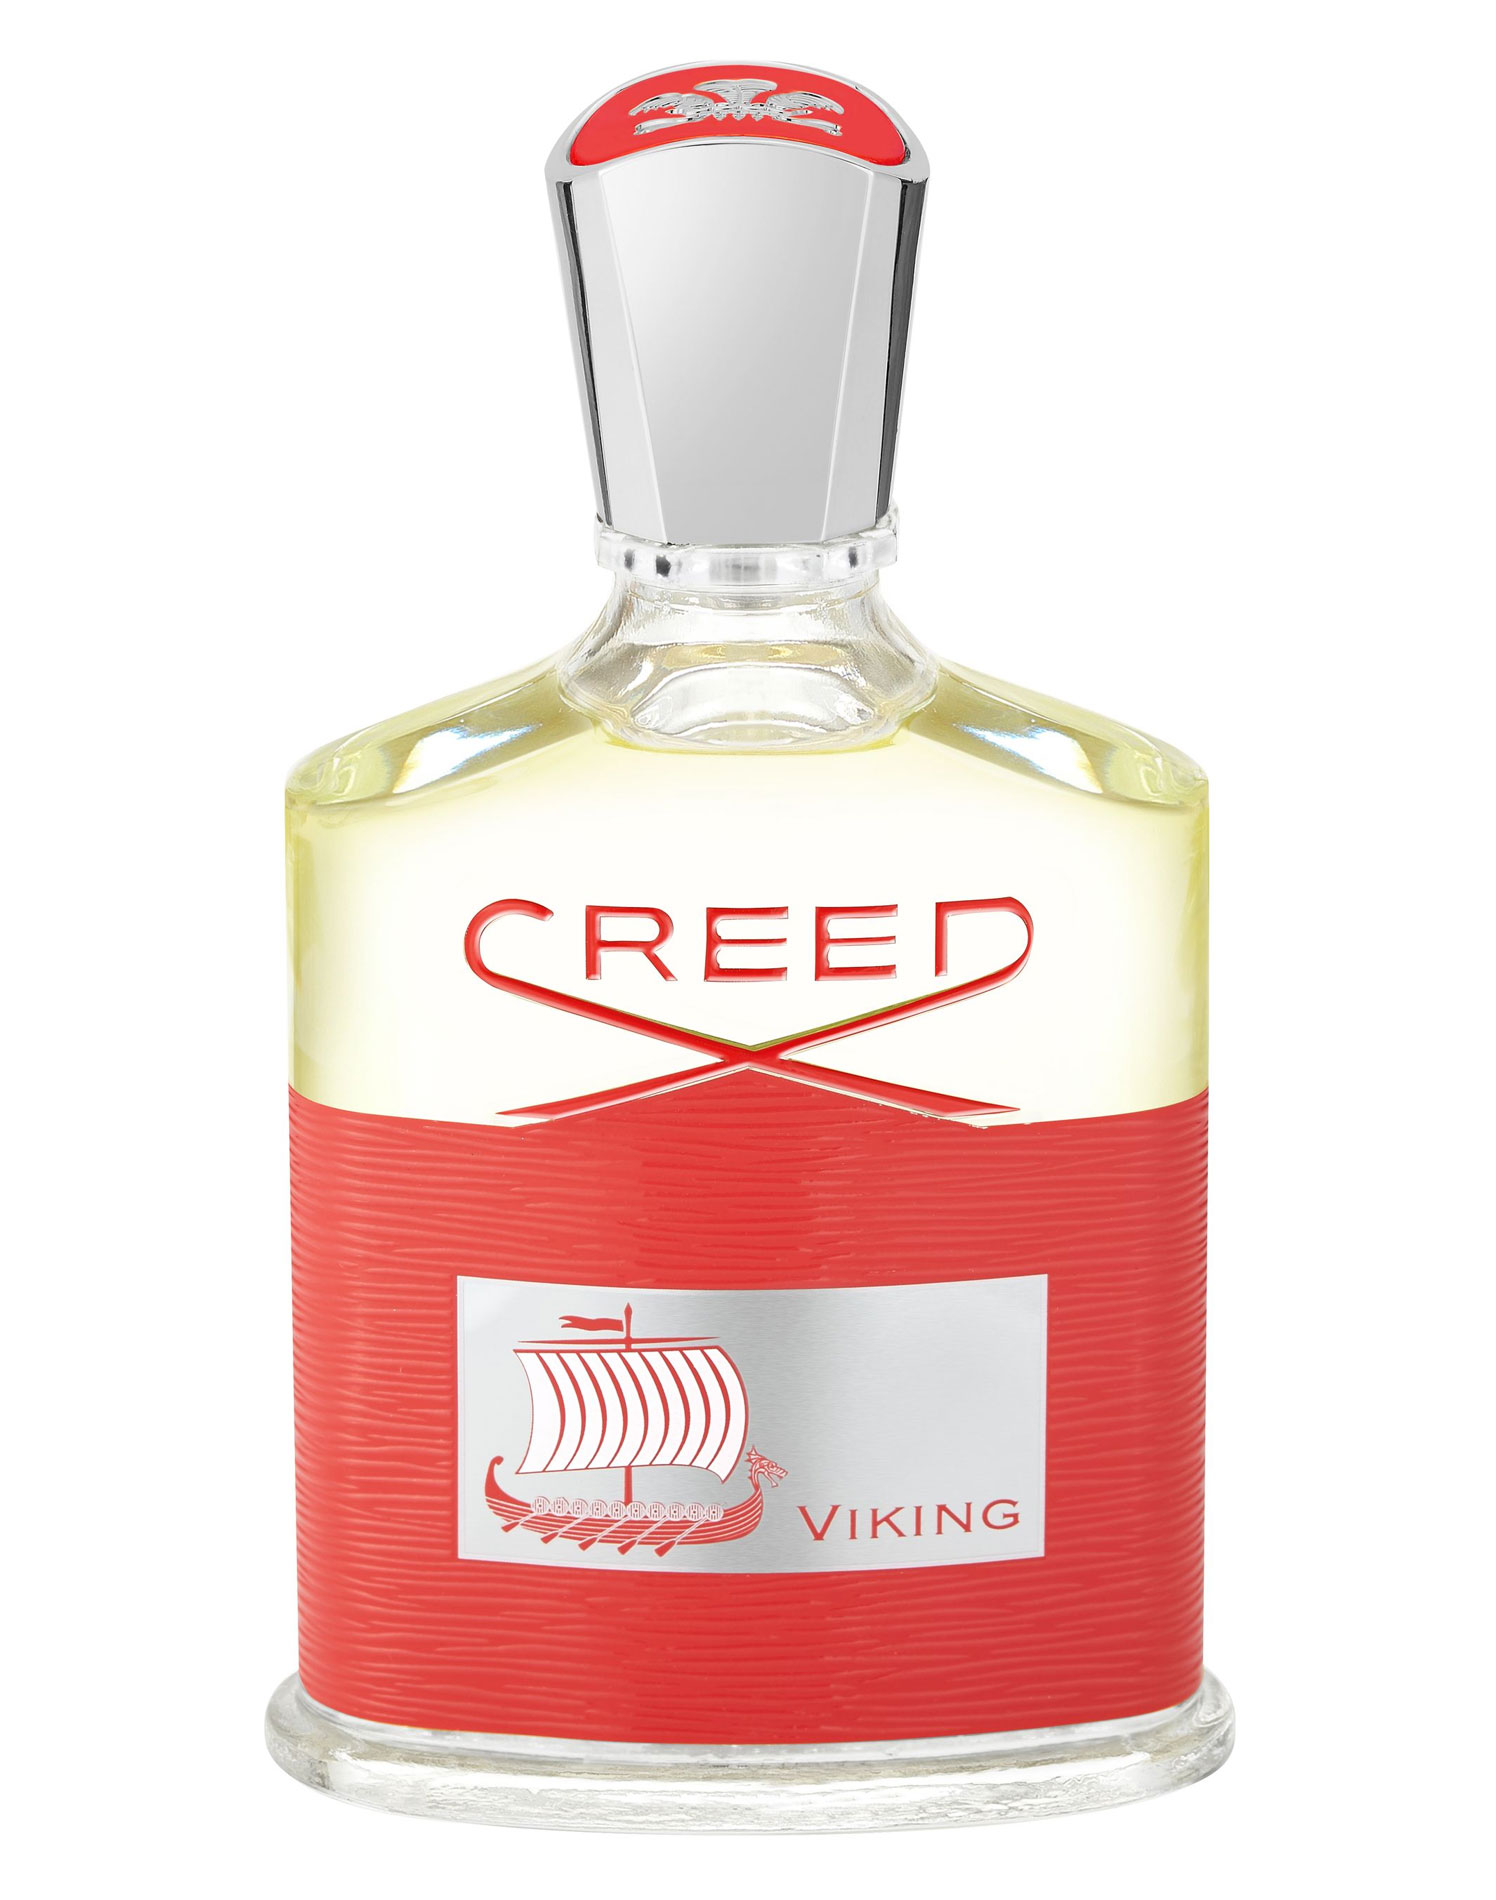 Новый мужской аромат Viking от Creed